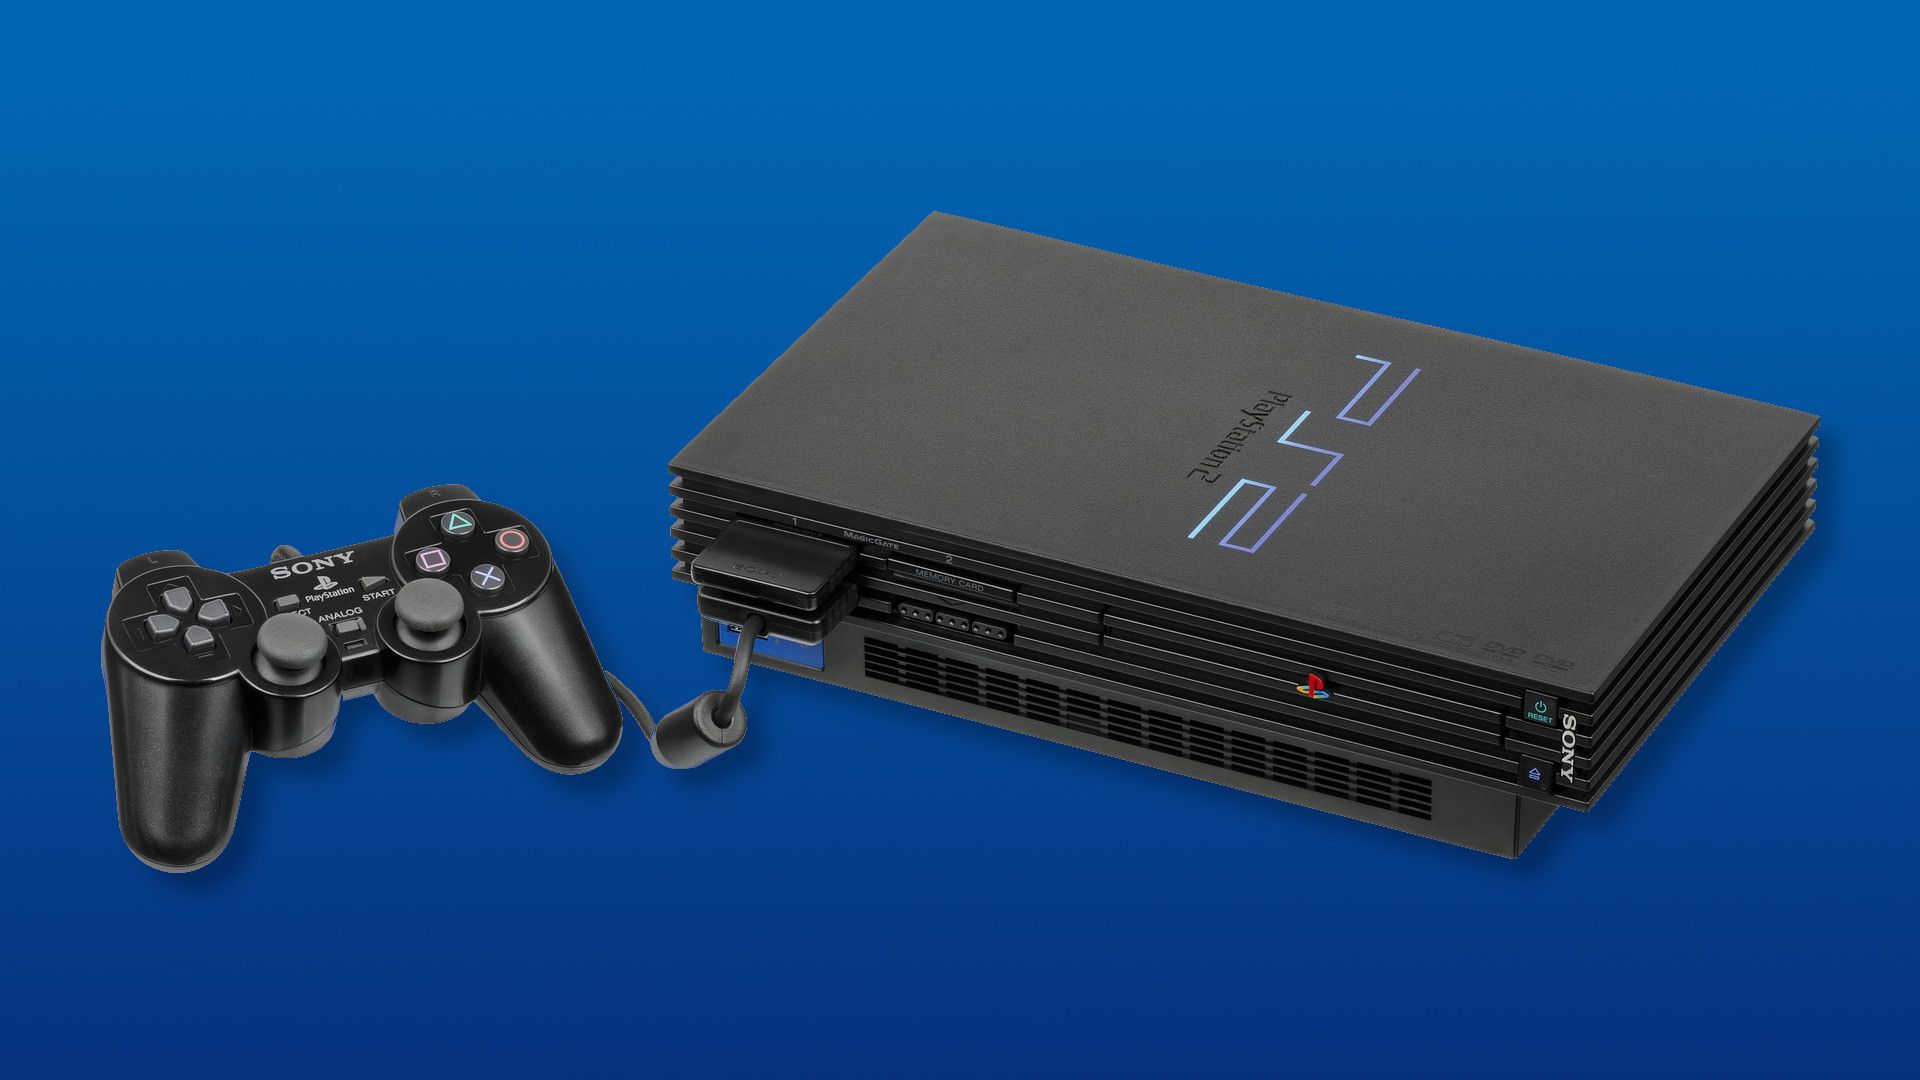 Por que o PlayStation 2 era tão acessível enquanto o PlayStation 3